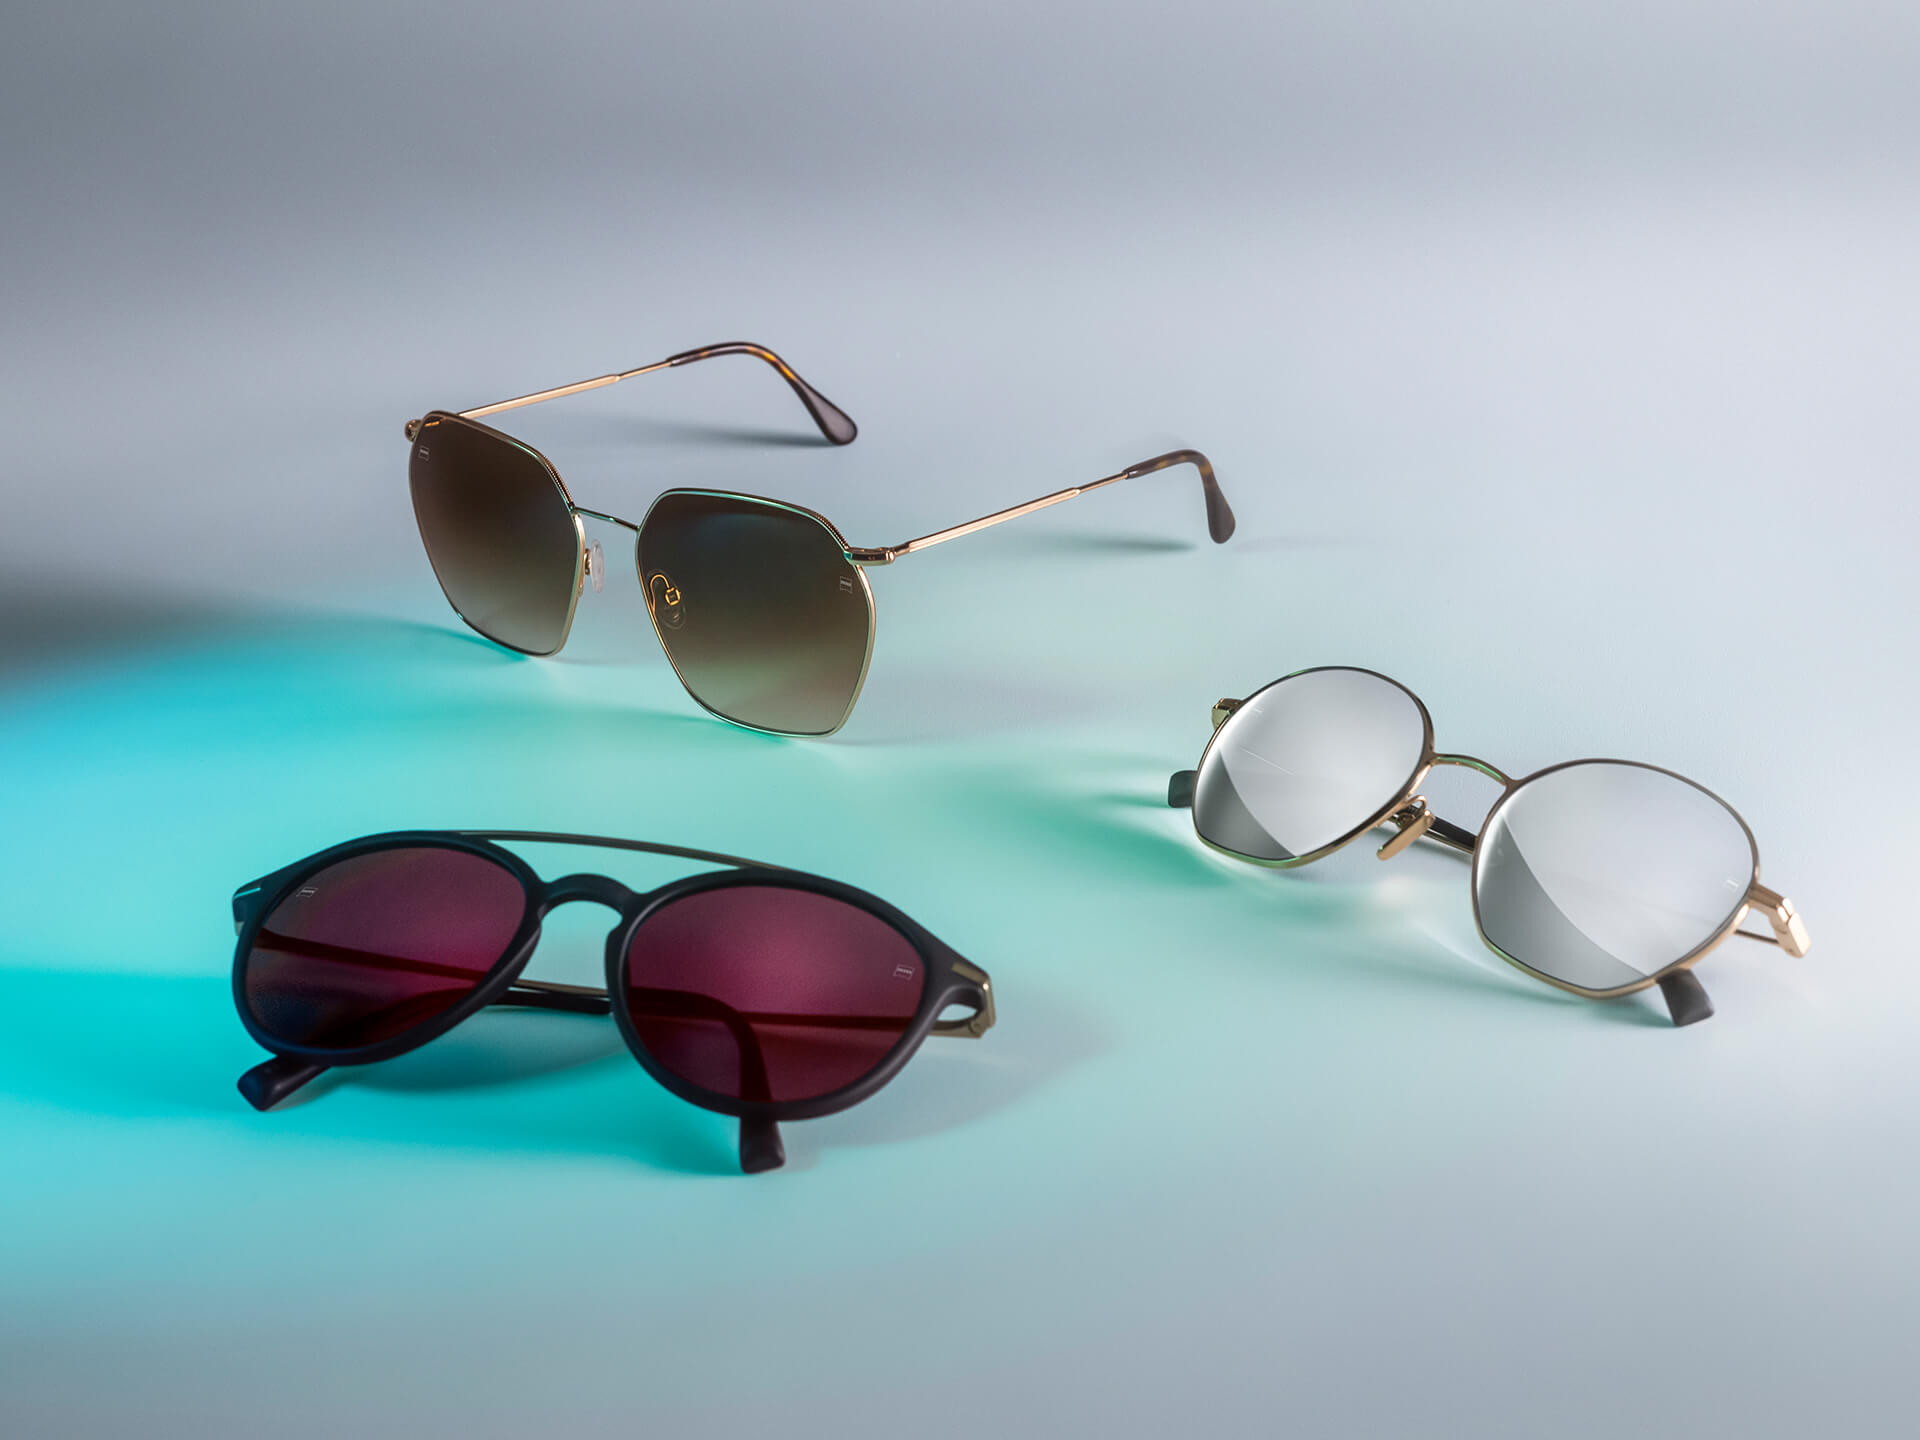 Tres pares de gafas de sol con lentes de gafas de sol ZEISS de distintos colores, con protectores DuraVision Sun, DuraVision Mirror y Flash Mirror, visibles sobre un fondo blanco con reflejo de luz azul.